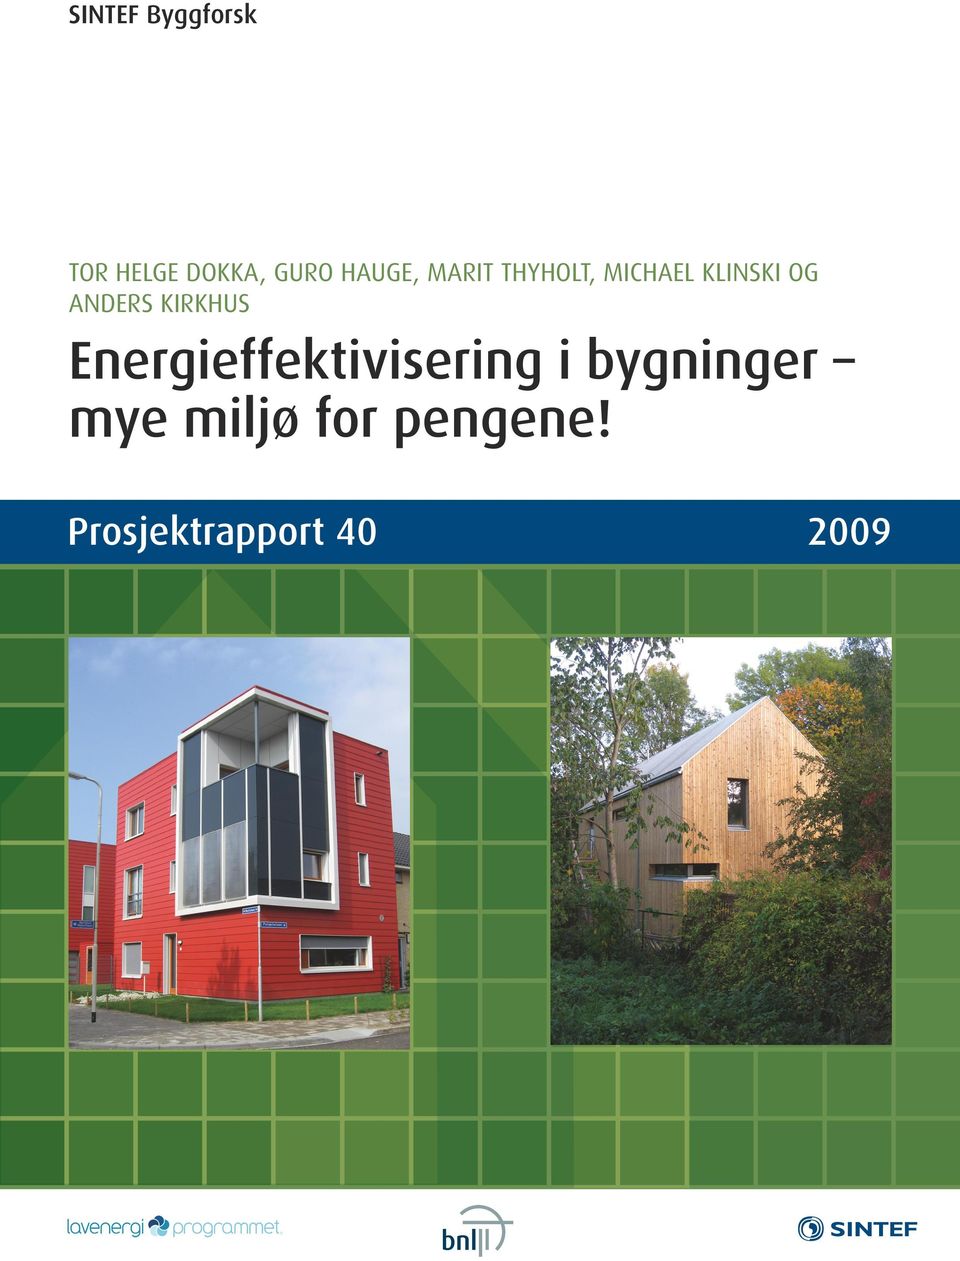 ANDERS KIRKHUS Energieffektivisering i